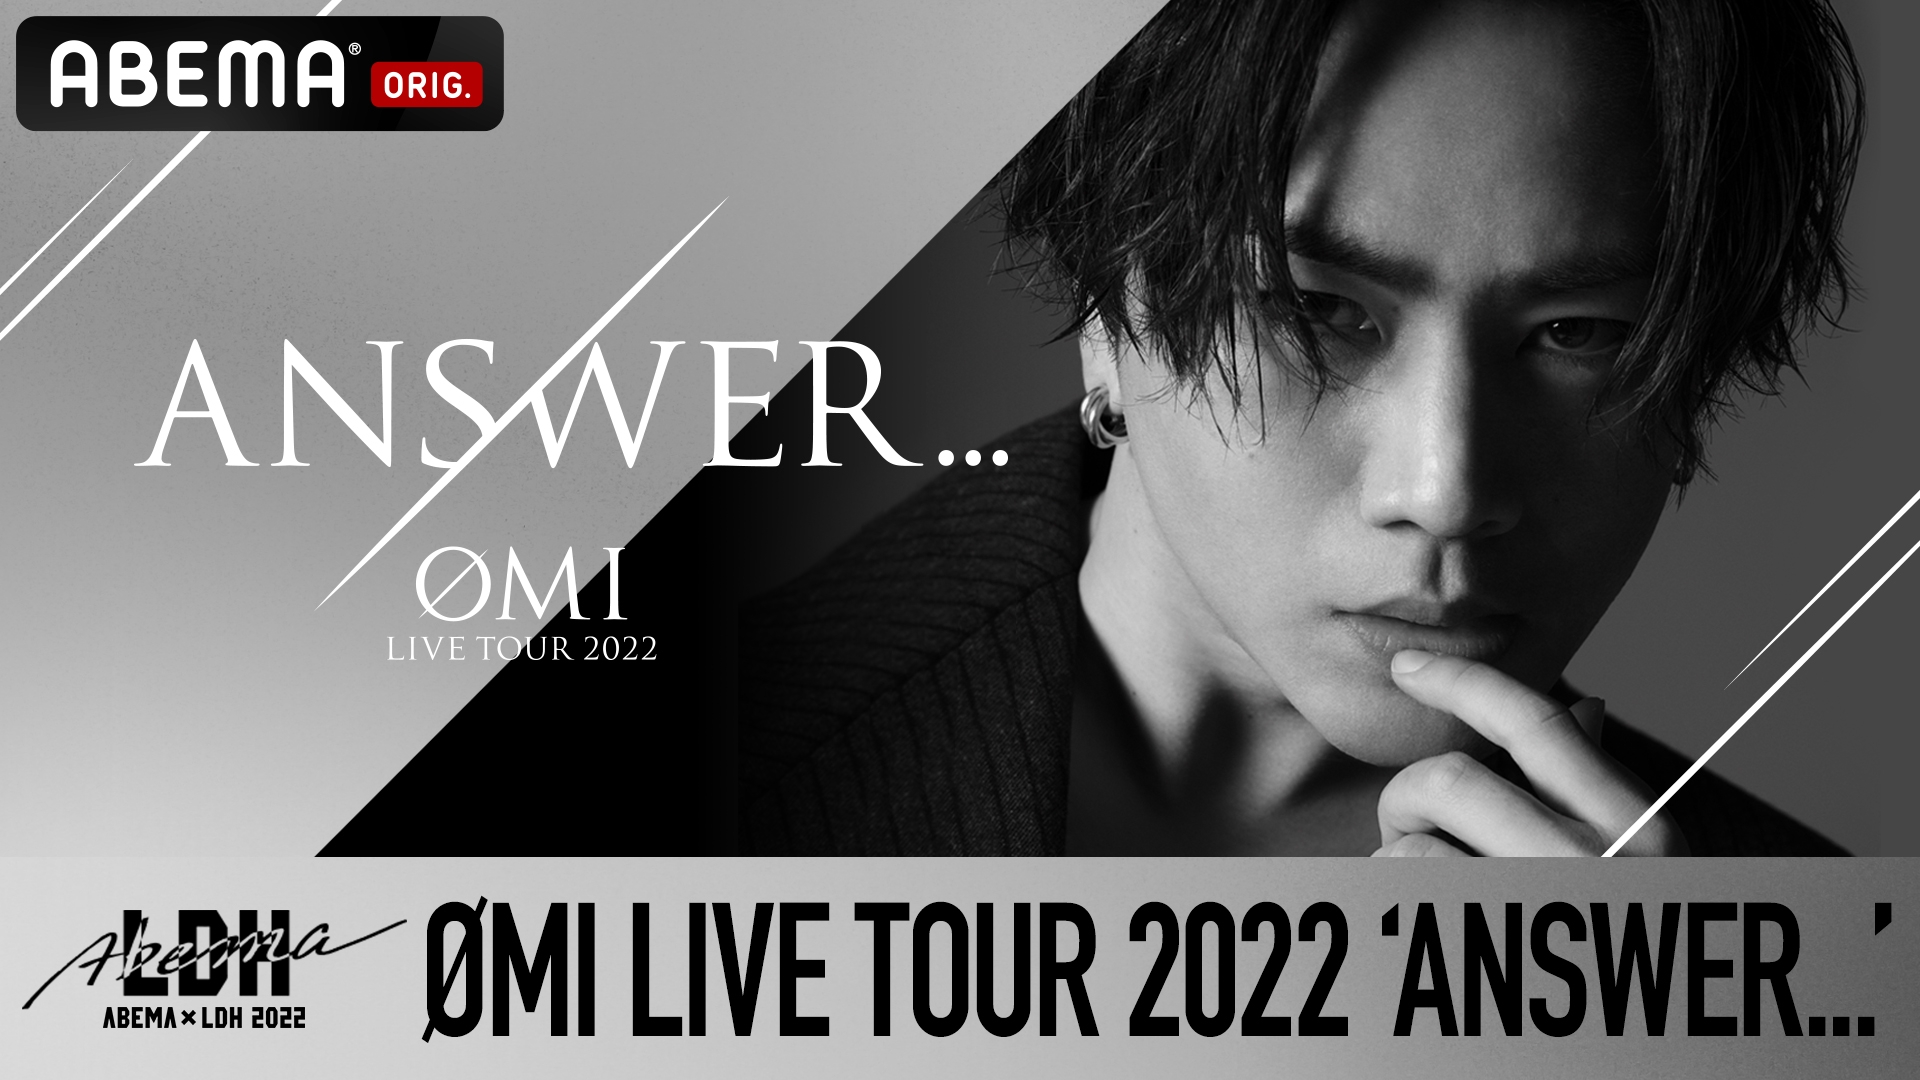 ØMI LIVE TOUR 2022 